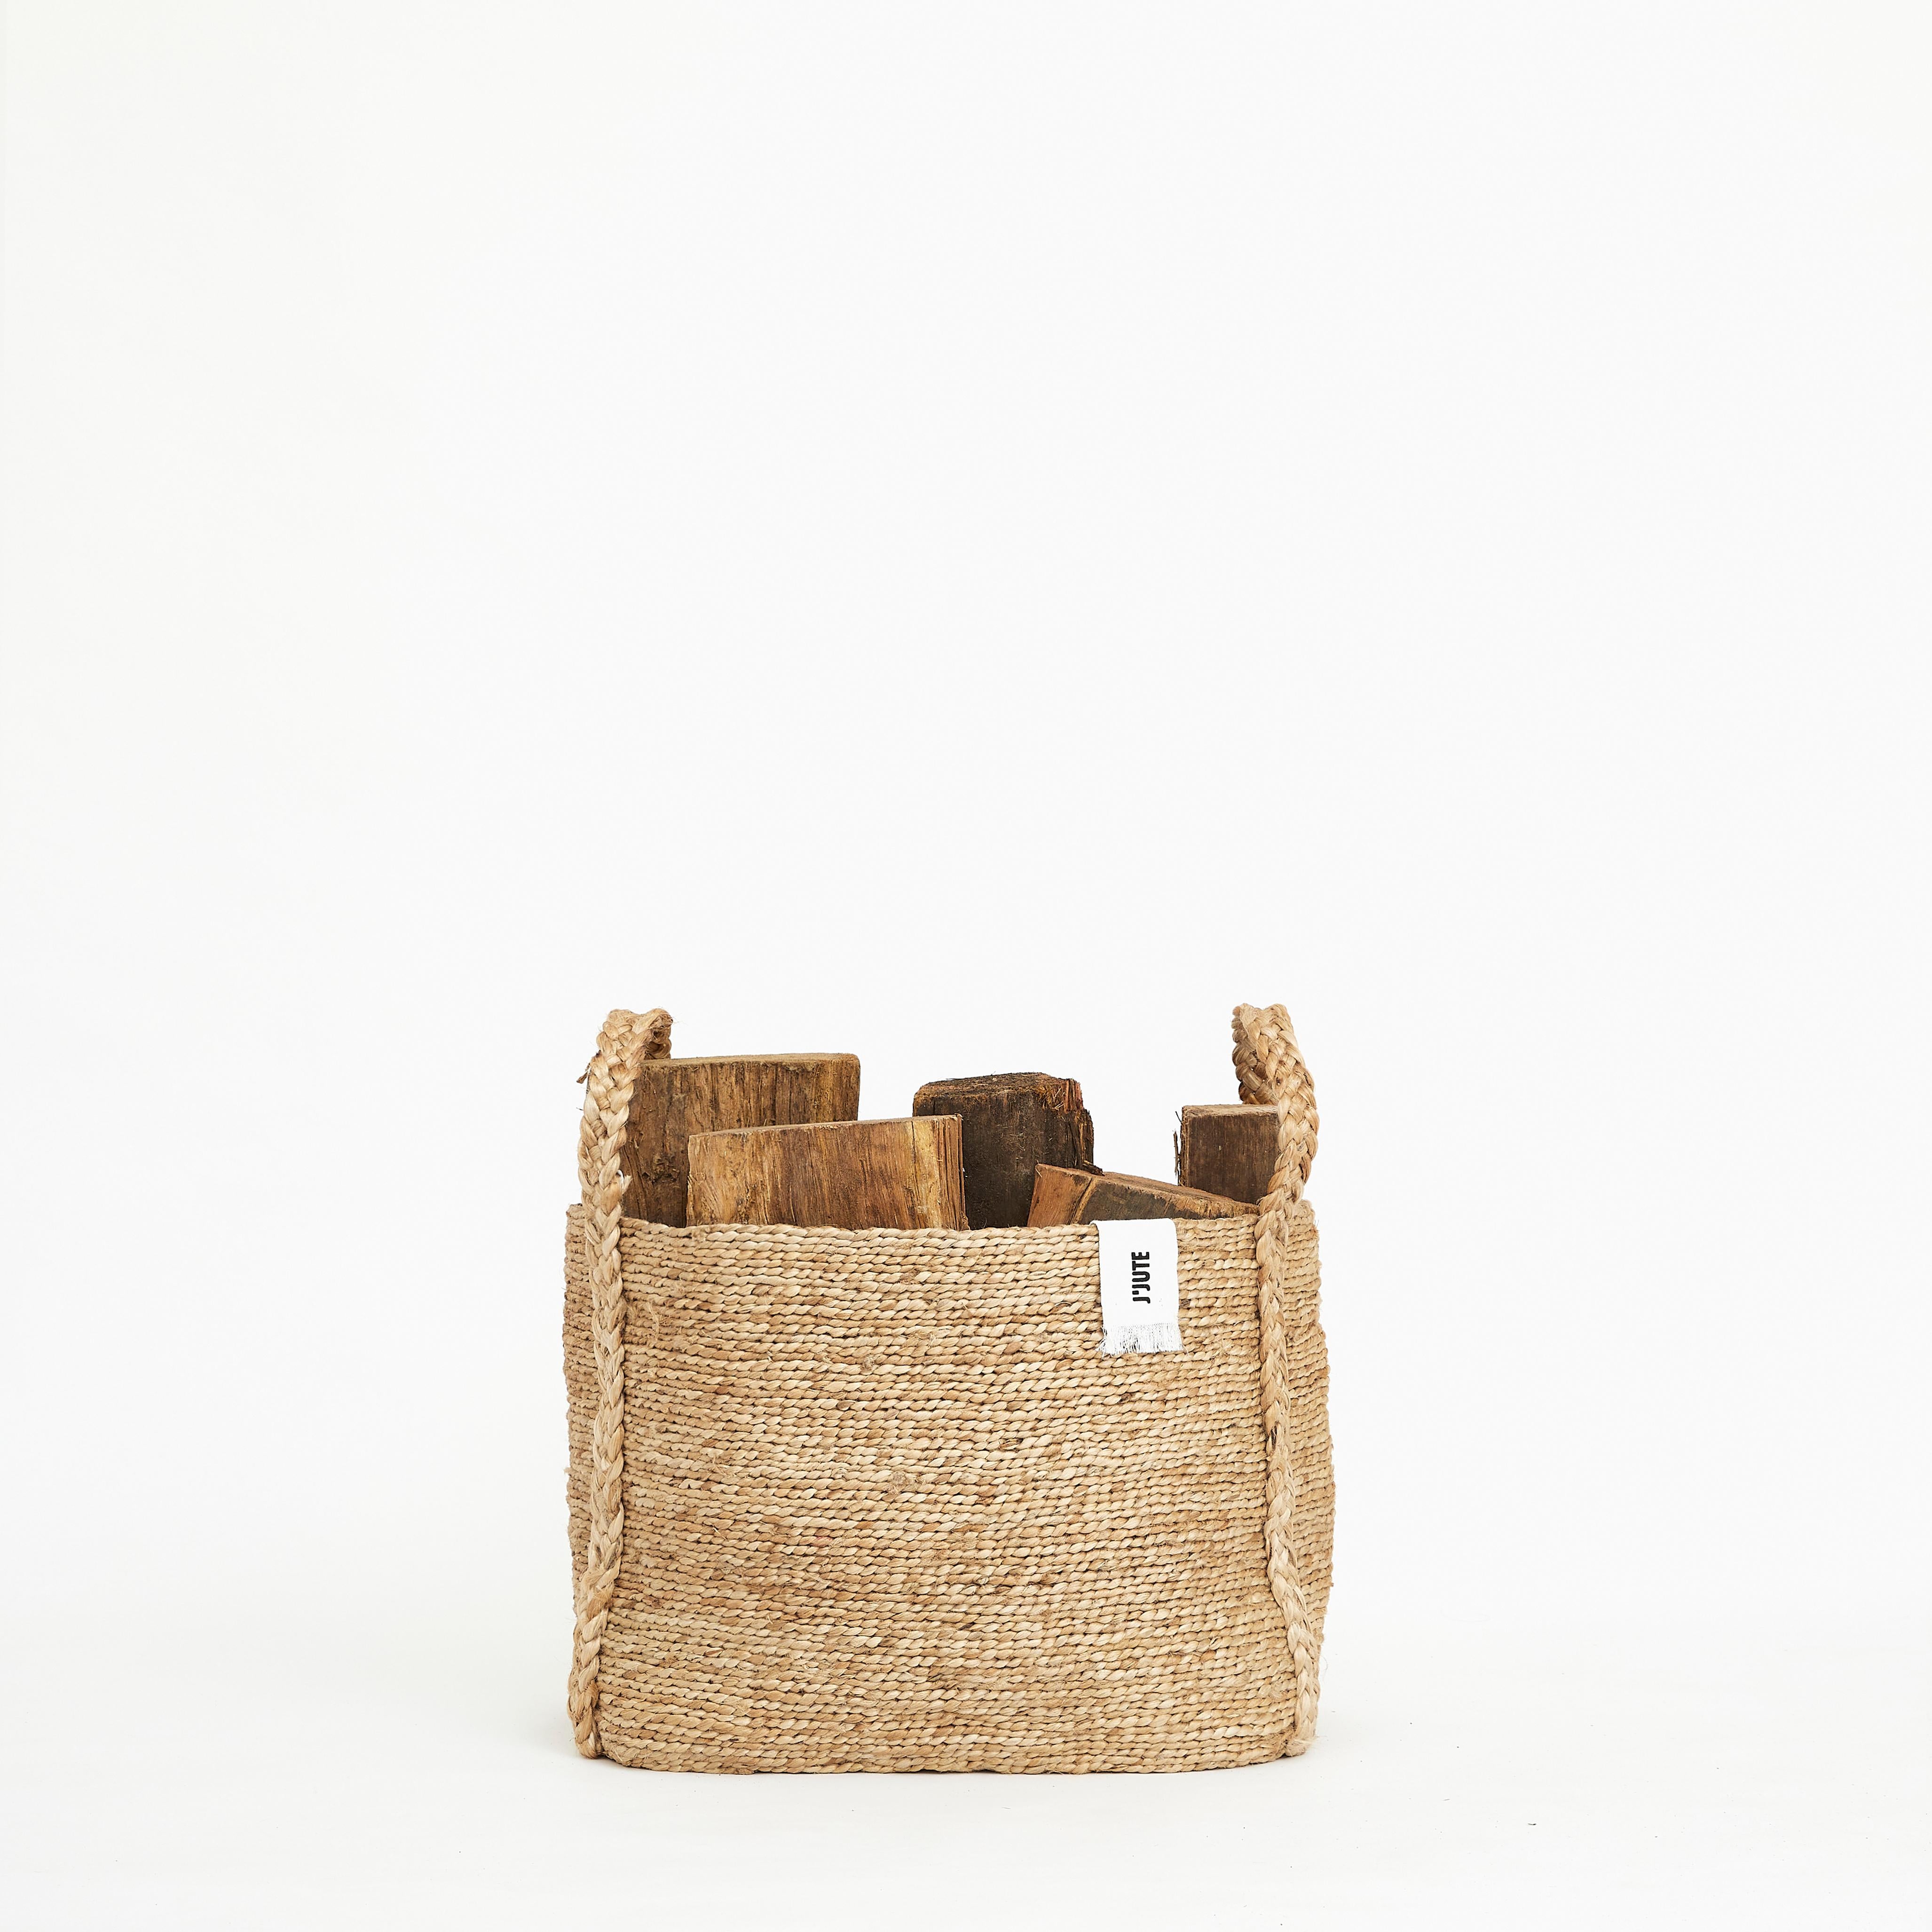 Woven Jute Baskets Maya Set of 3, by J'Jute For Sale